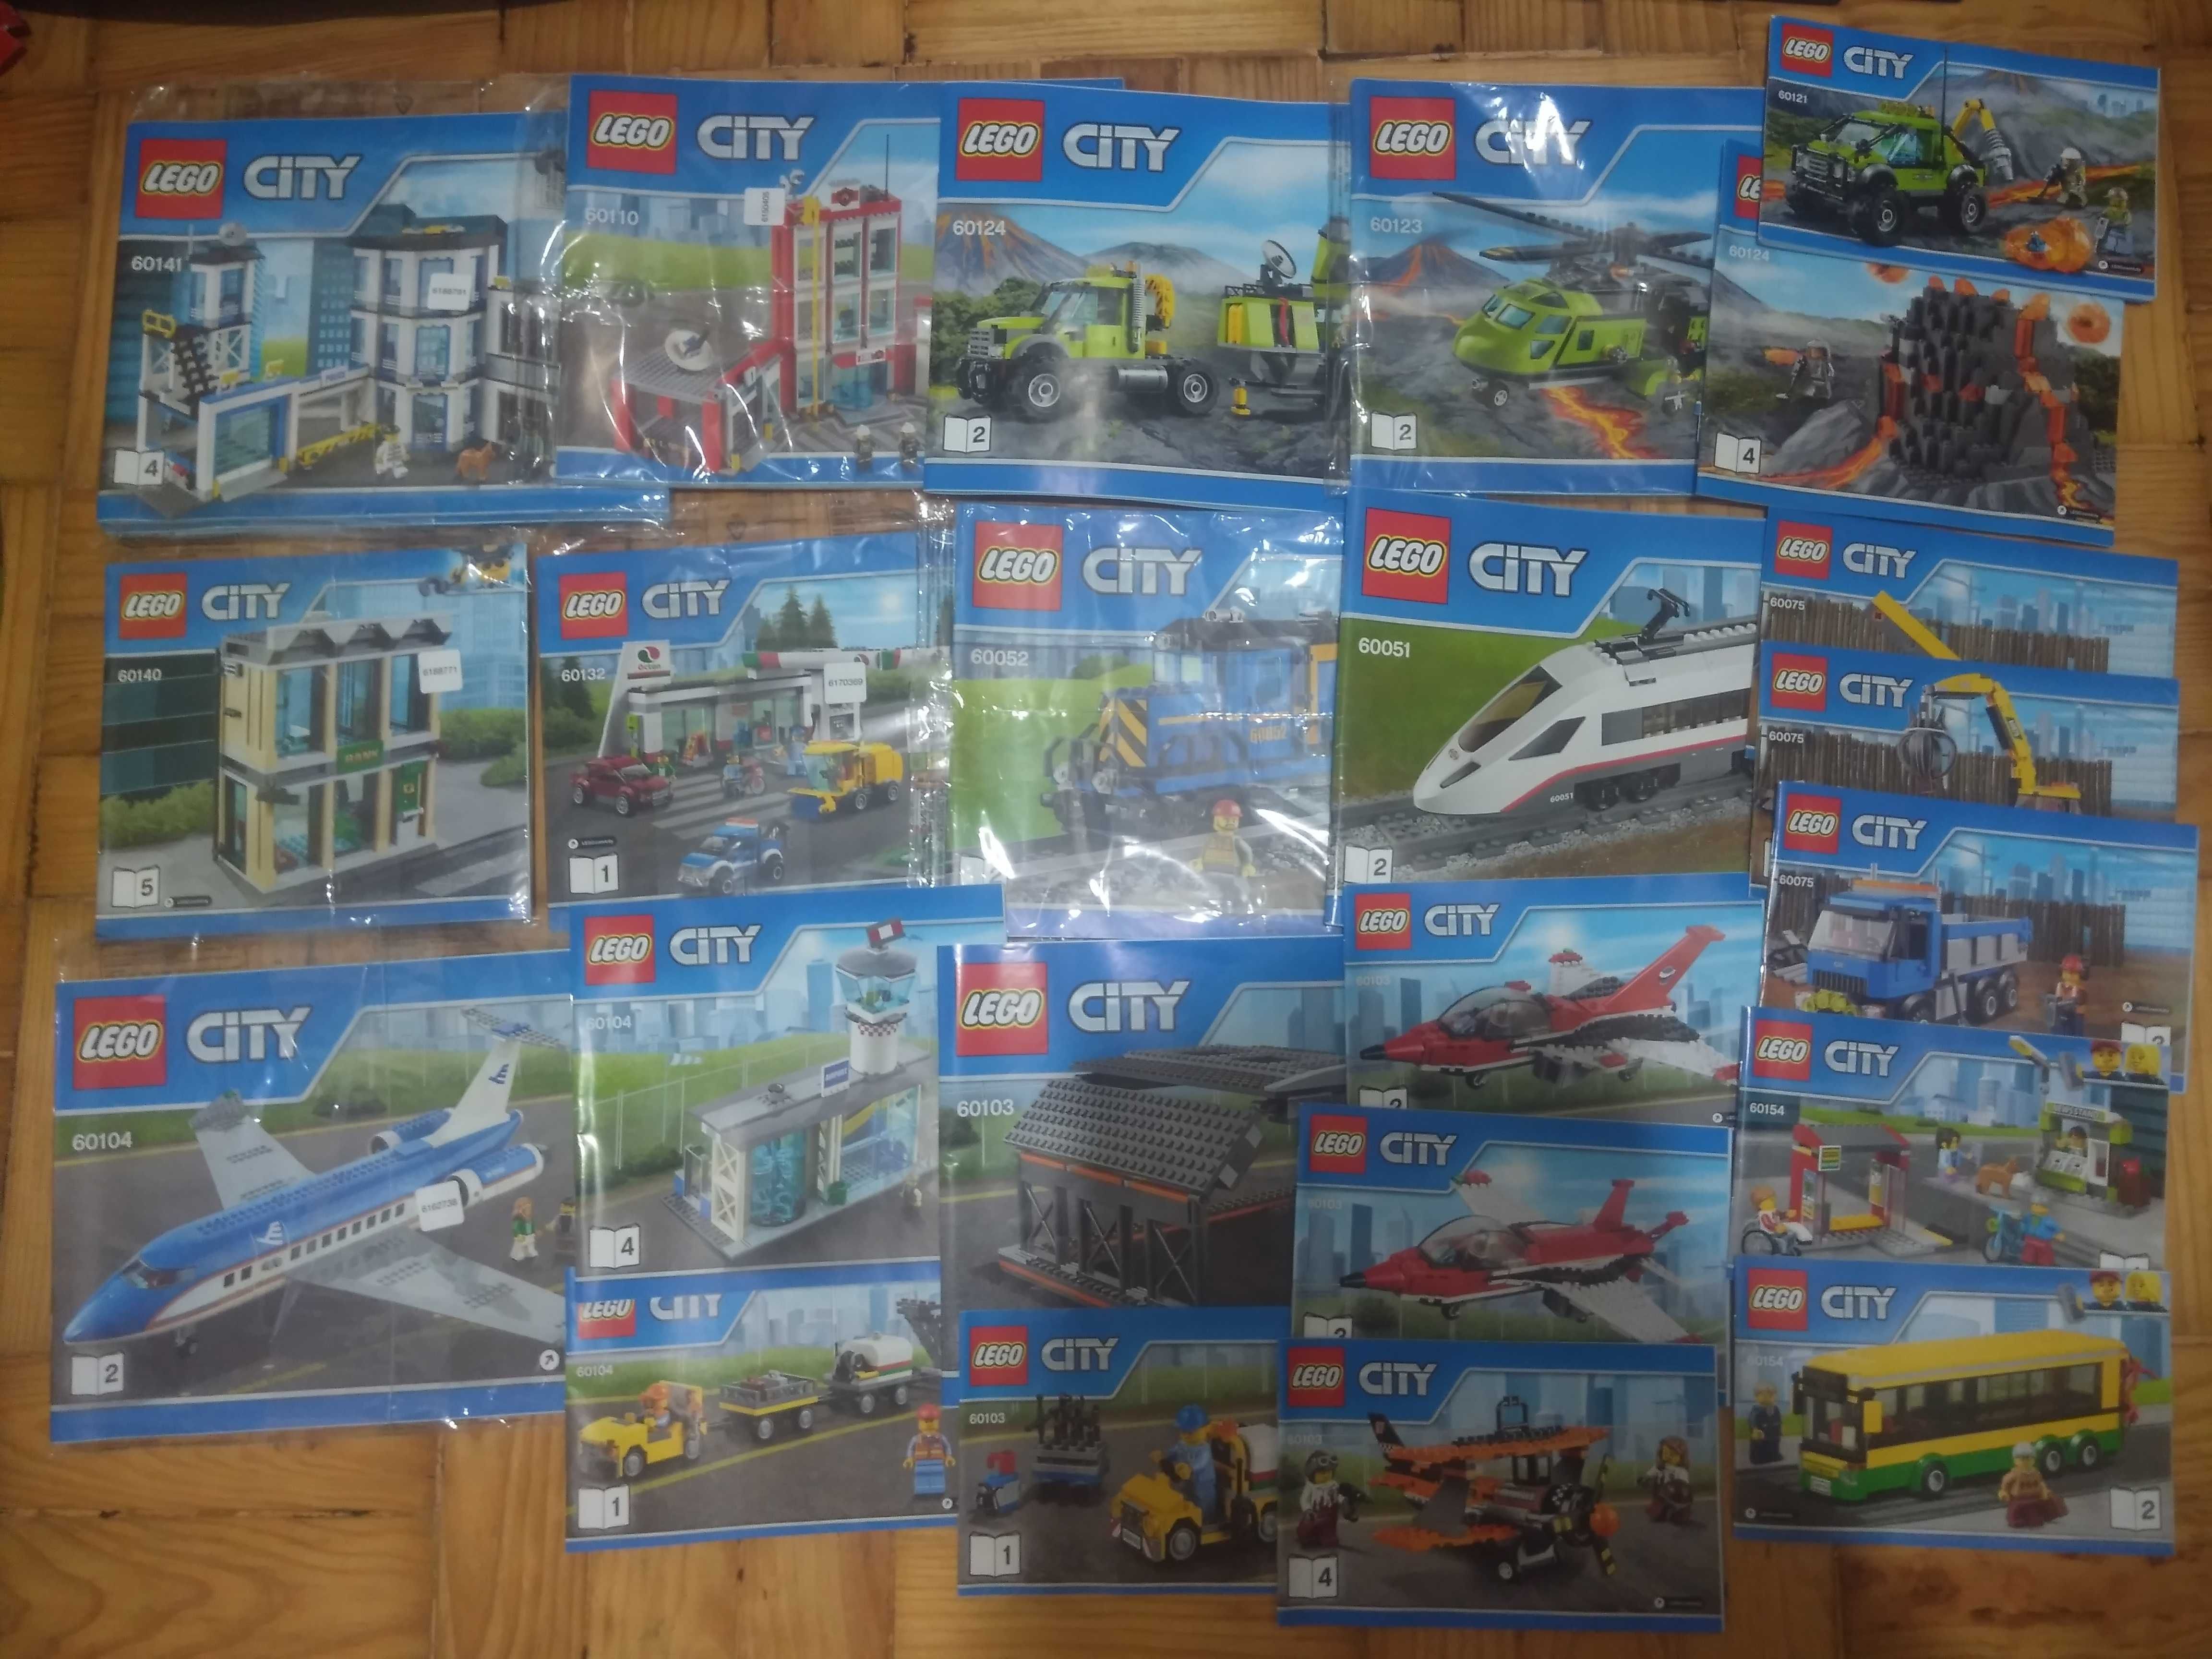 LEGO City, Batman, Creator, Super Heroes, Ninjago